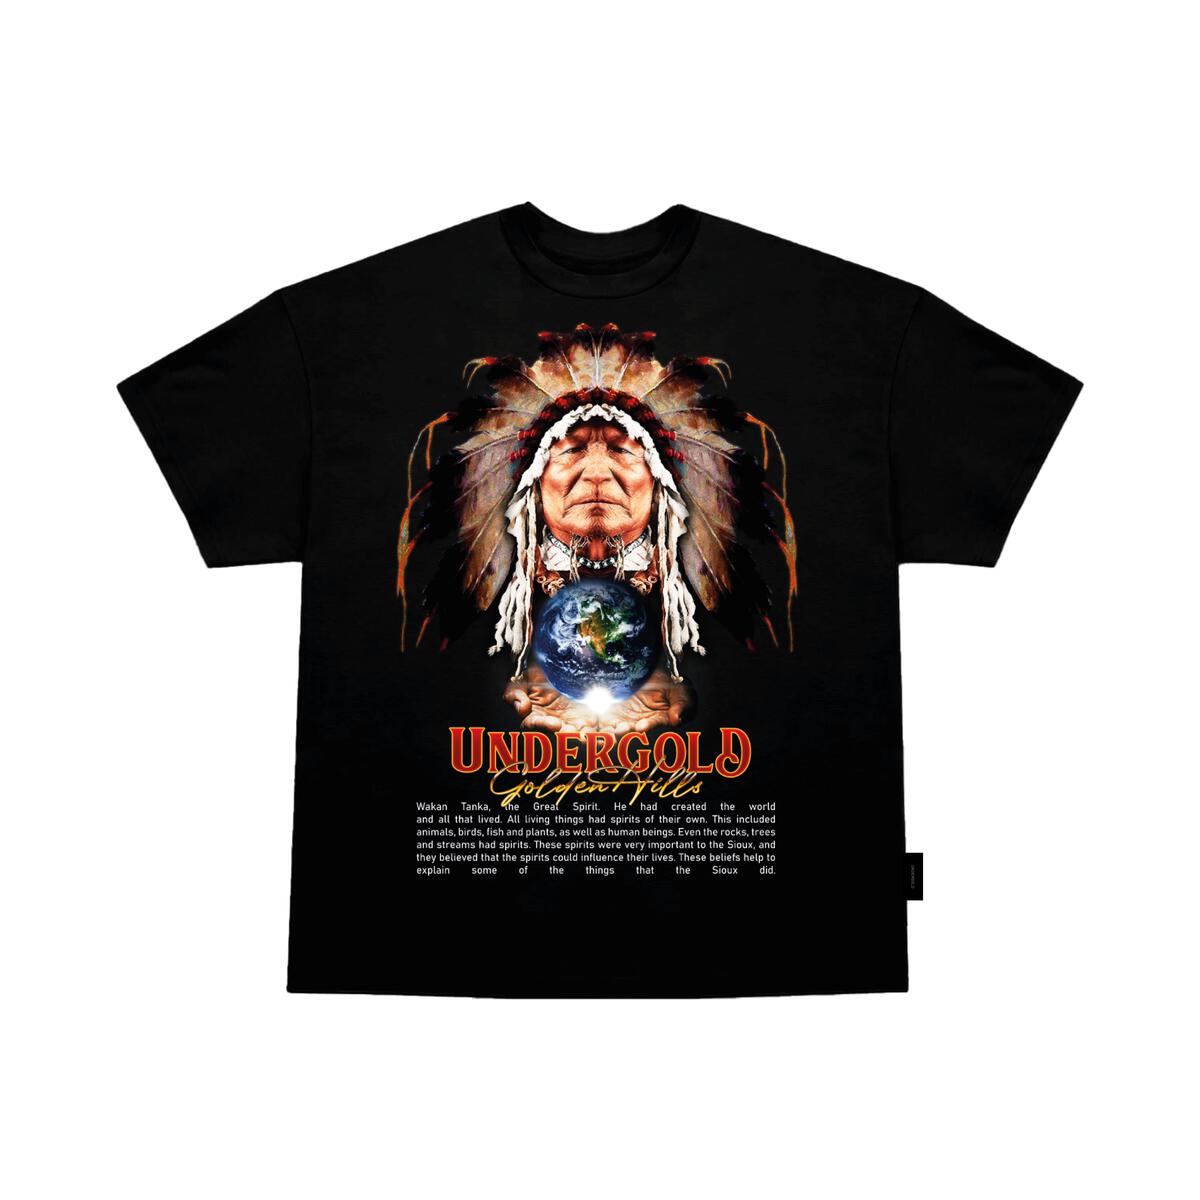 Undergold Golden Hills III "The Chief" Exclusive T-shirt Black